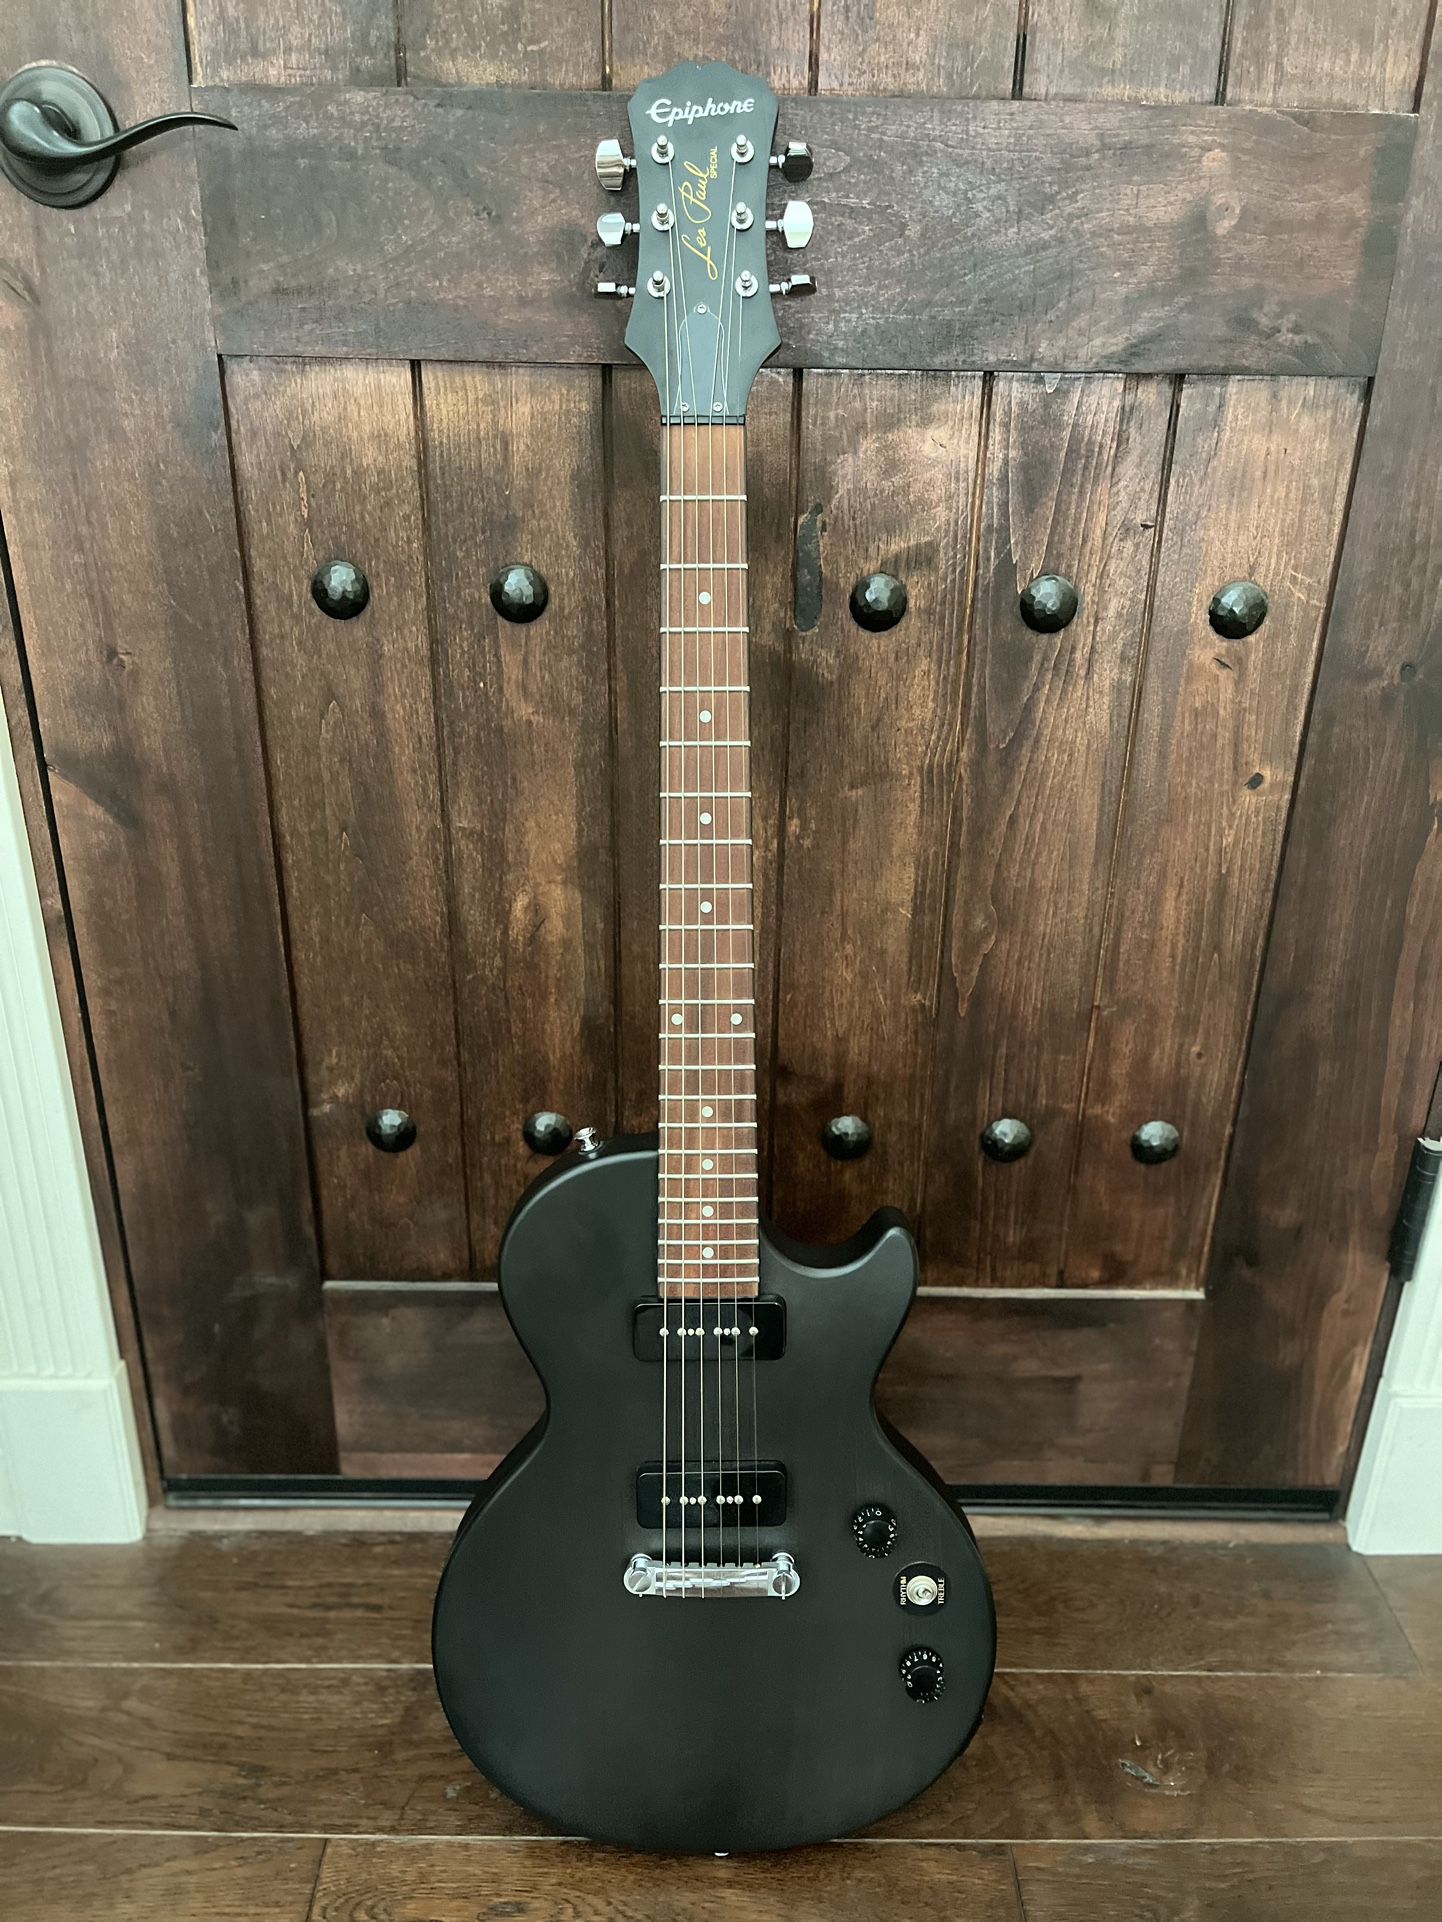 Guitar For Sale - Black Epiphone Les Paul